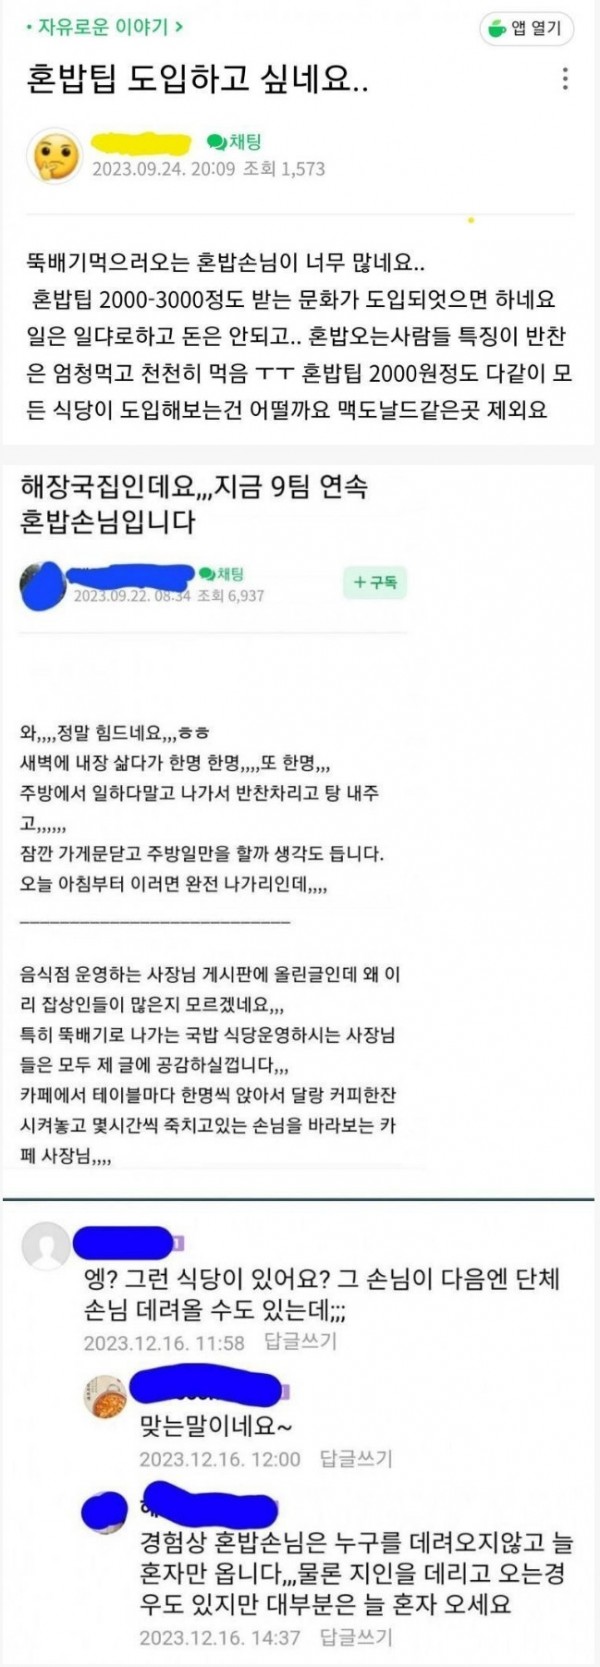 혼밥족을 극혐하는 음식점 사장님들